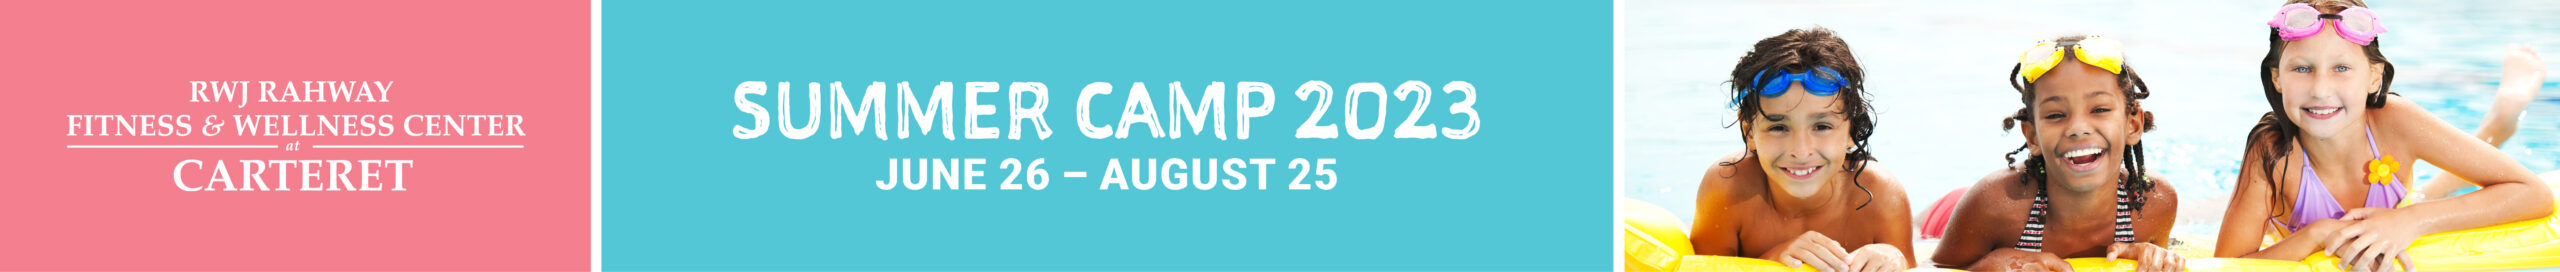 Carteret 2023 Summer Camp